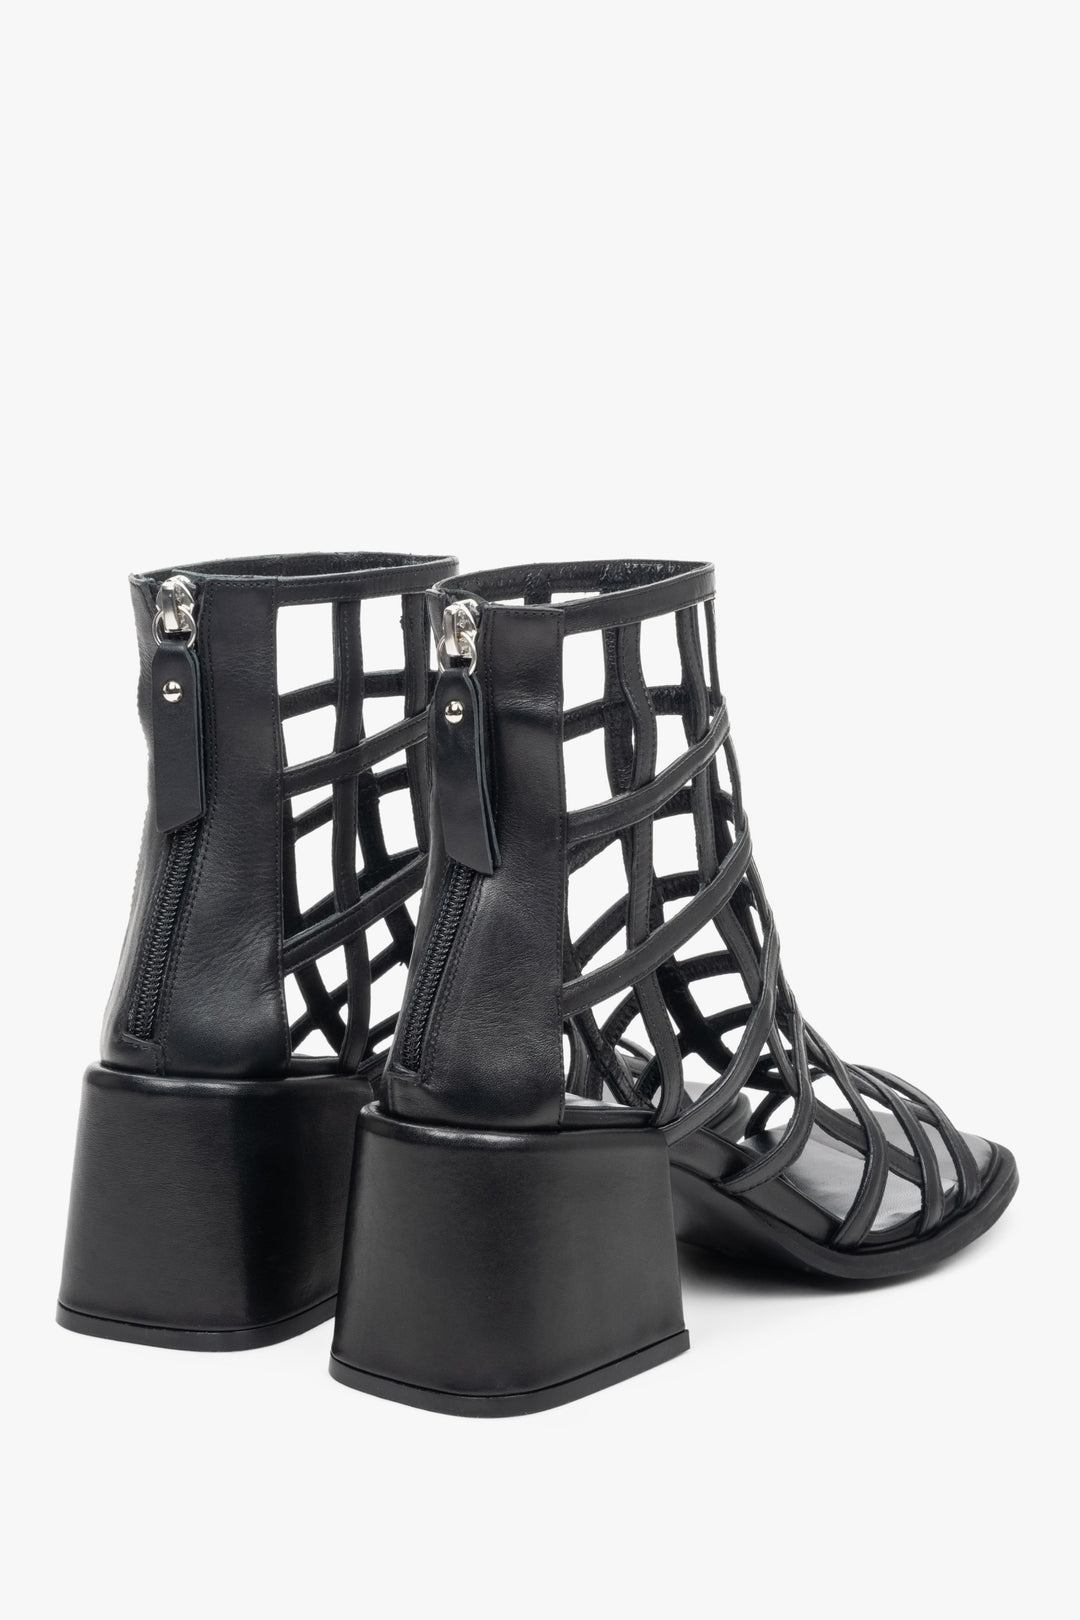 Sandały damskie w kolorze czarnym ze skóry naturalnej z plecionych pasków - zbliżenie na obcas i przyszwę boczną obuwia.